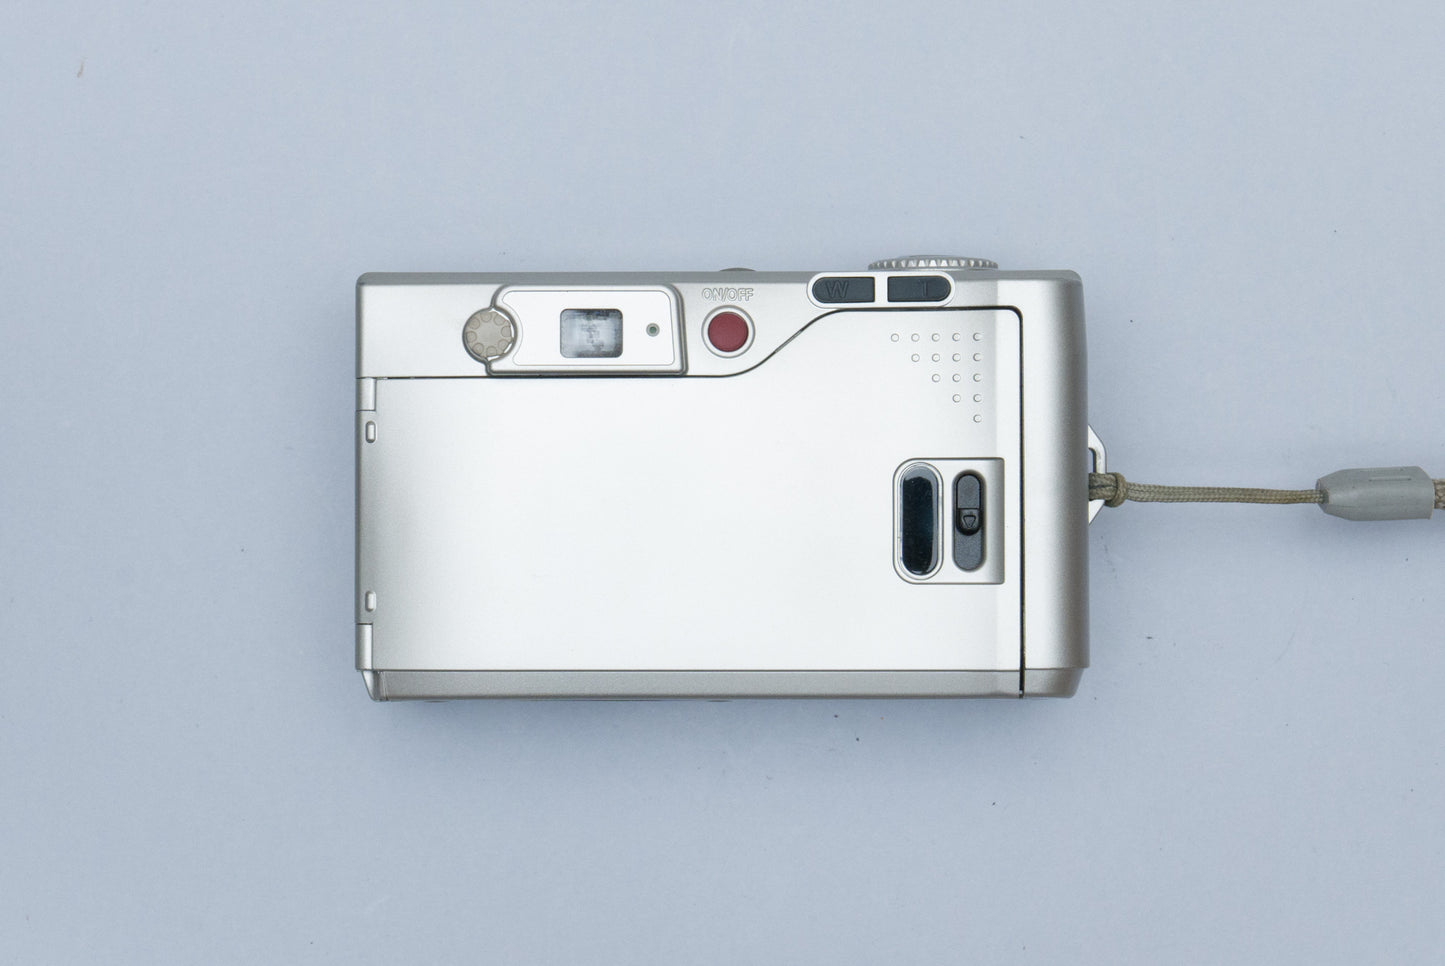 Voigtlander Vitessa D120 Compact 35mm Point and Shoot Film Camera